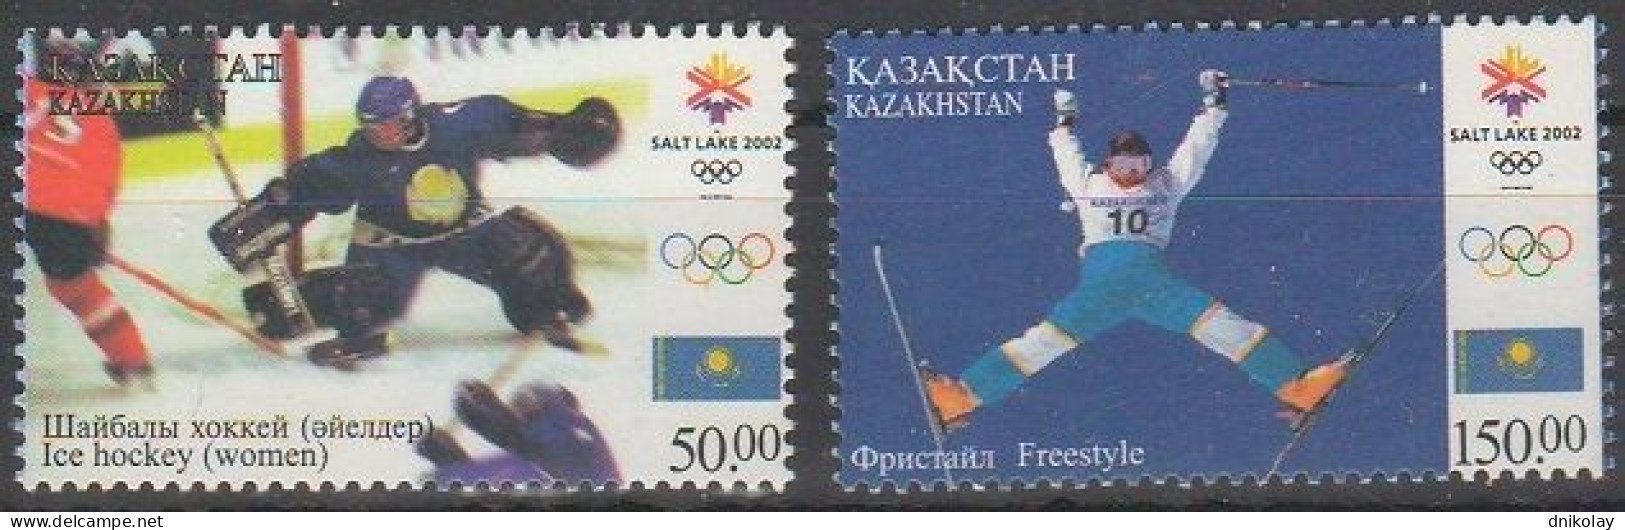 2002 364 Kazakhstan Winter Olympic Games - Salt Lake City, USA MNH - Kazakhstan